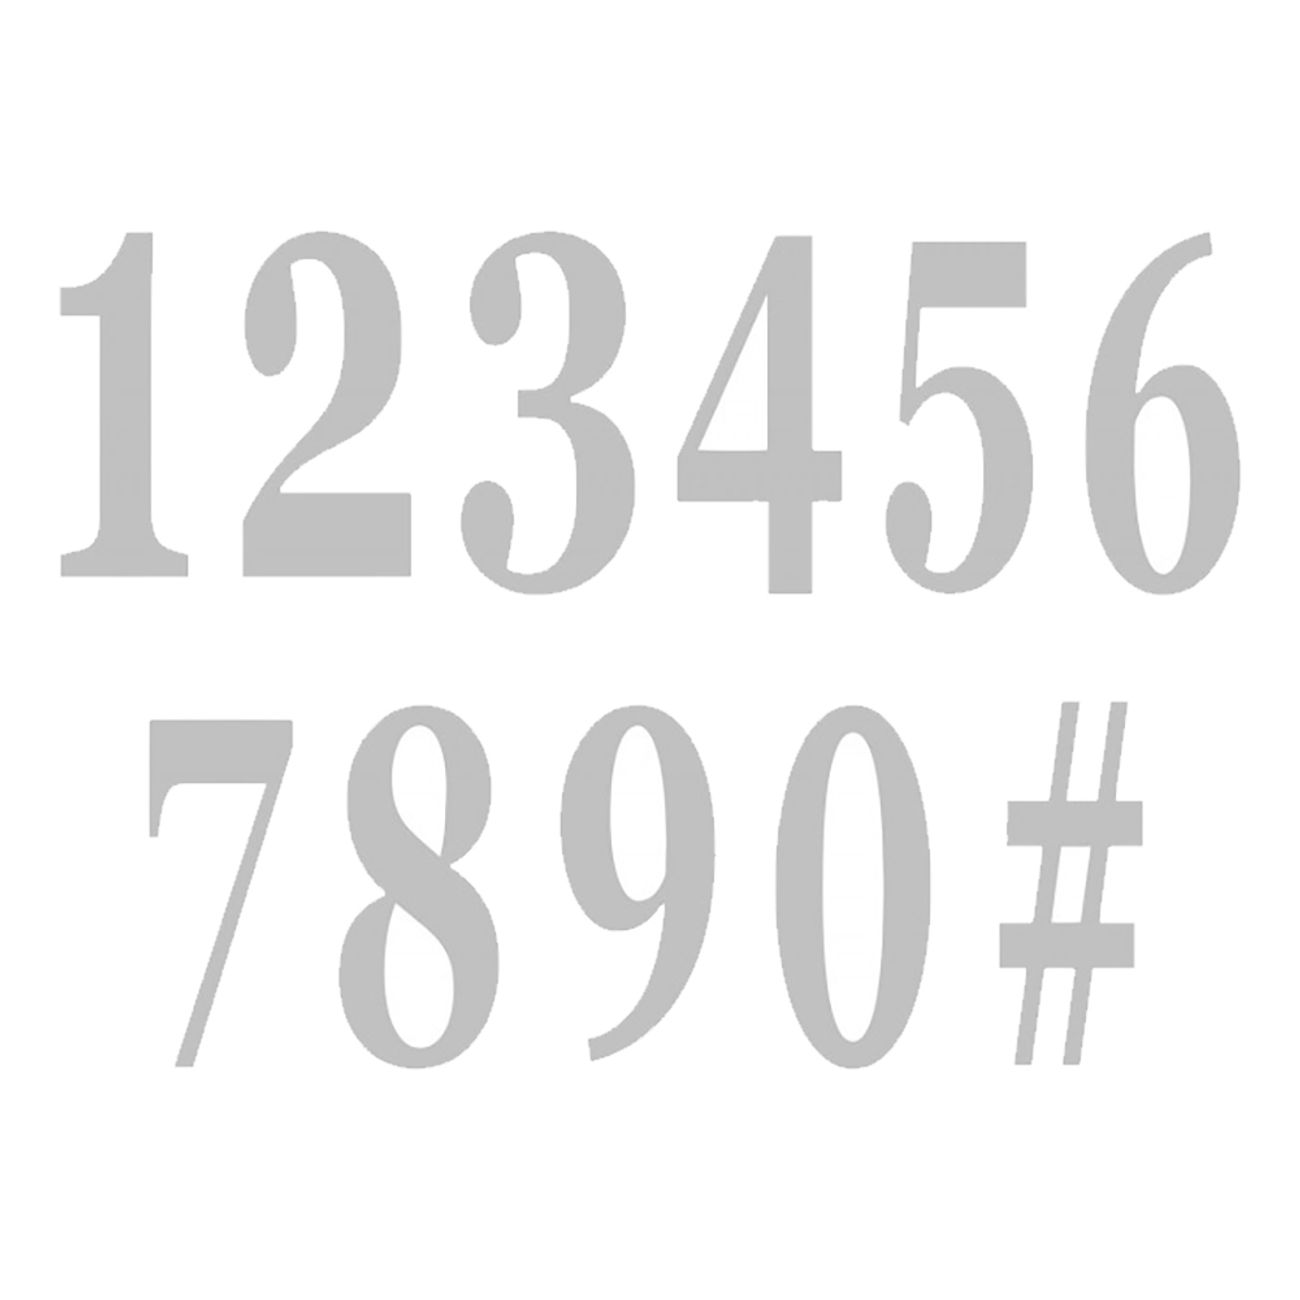 stora-stickers-siffror-92243-9